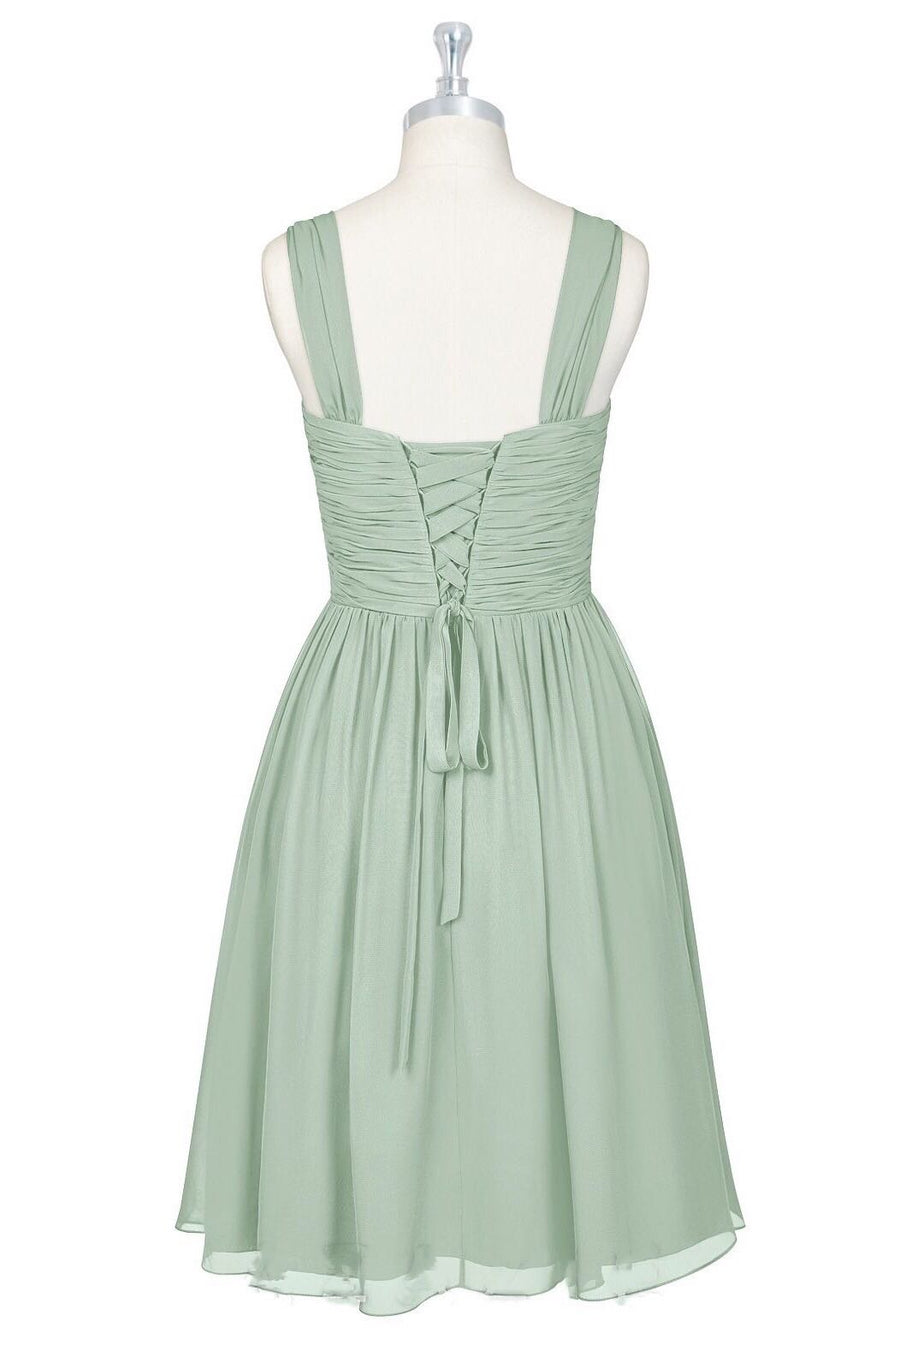 Sage Green V-Neck Backless A-Line Short Bridesmaid Dress